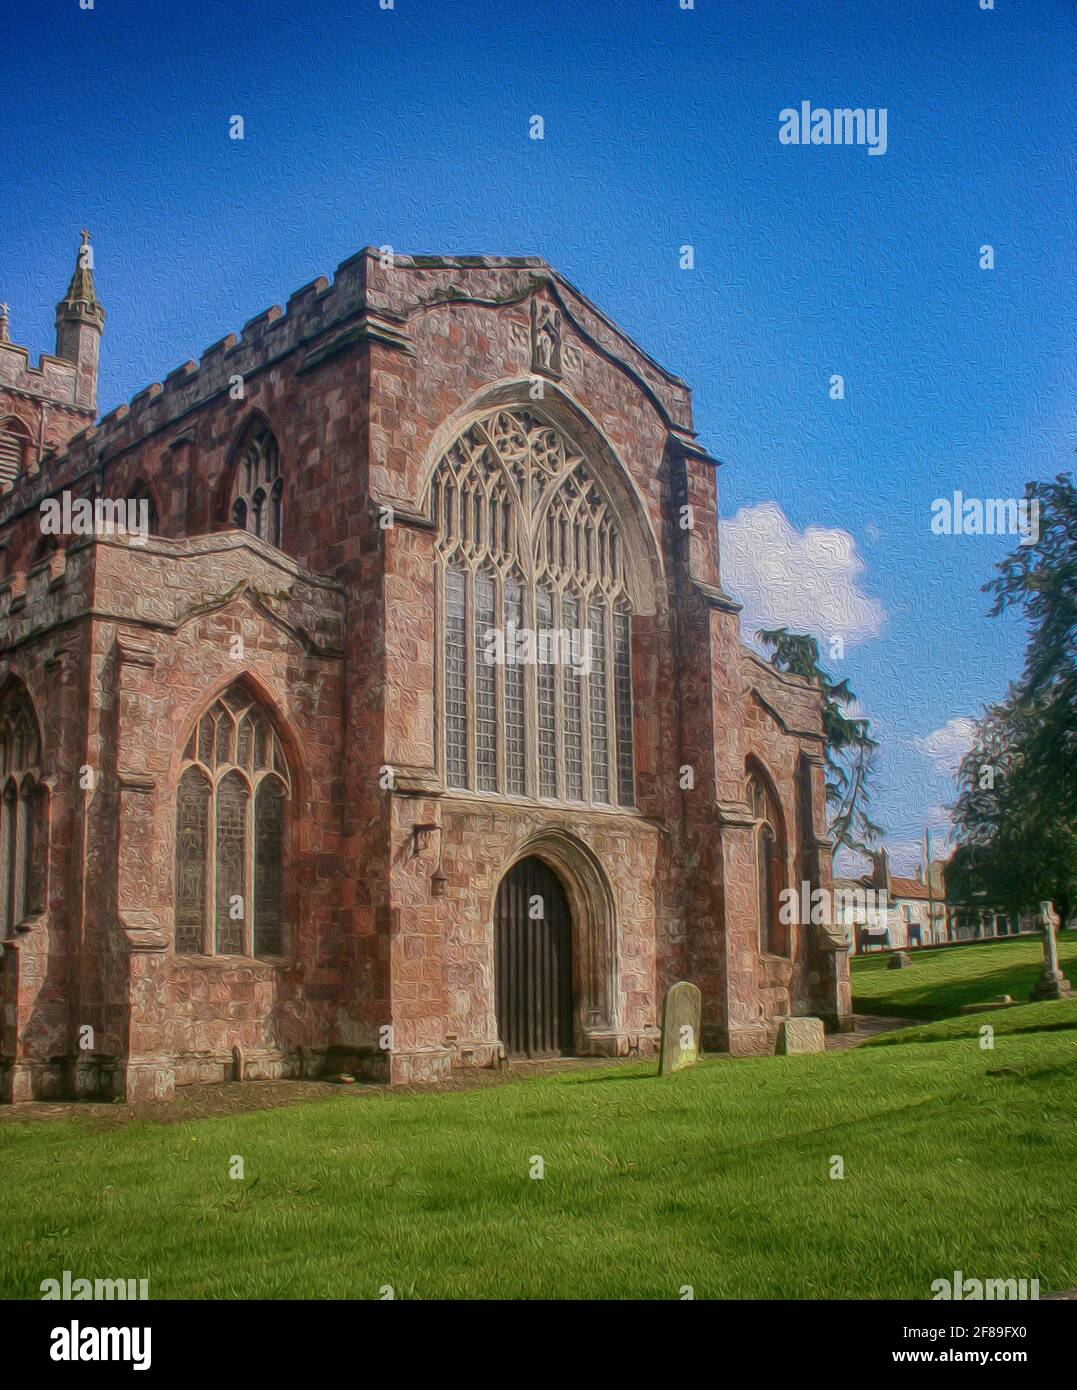 Crediton, Devon, UK- Pfarrkirche aus dem 15. Jahrhundert, Mauerwerk im normannischen gotischen Stil mit einem großen, frontalen Bogenfenster. Maleffekt hinzugefügt Stockfoto